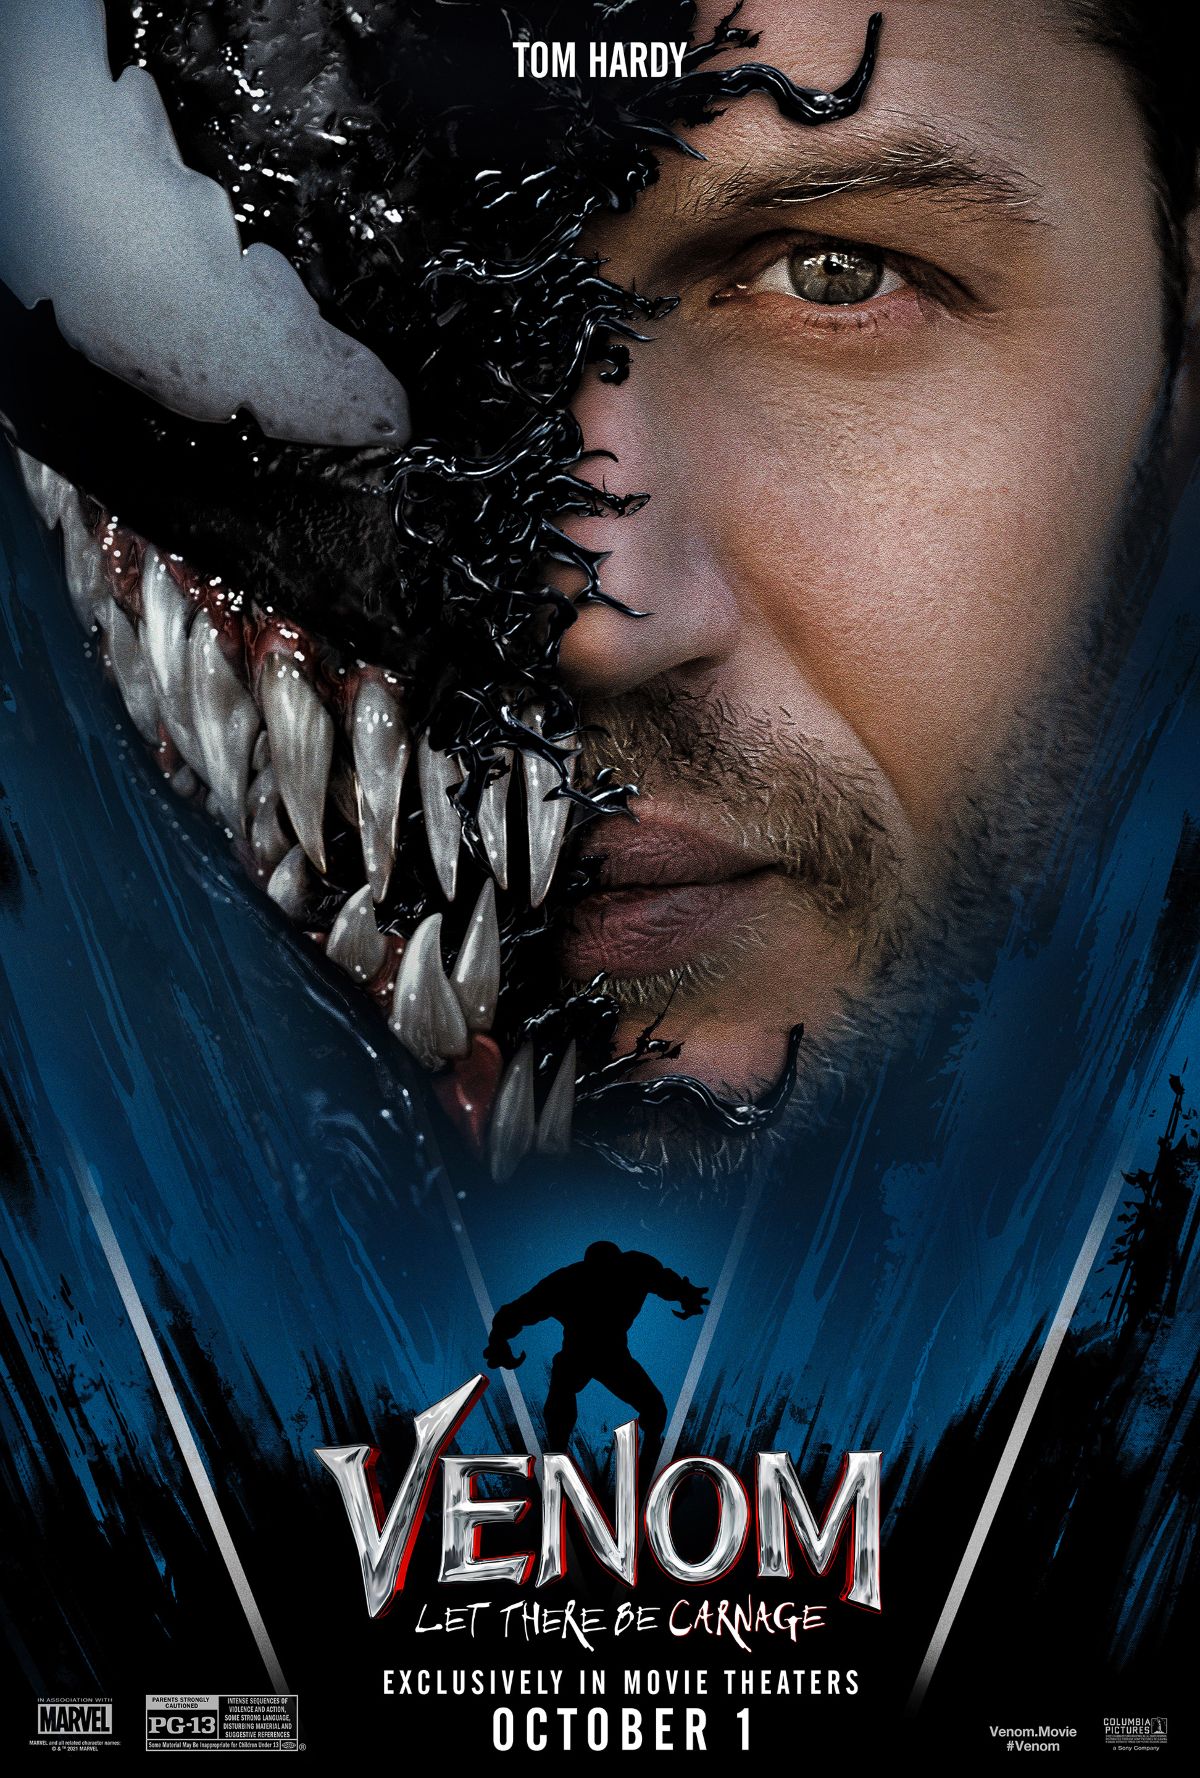 'Bom tấn' Venom: Let There Be Carnage nhận khen chê trái chiều - ảnh 4